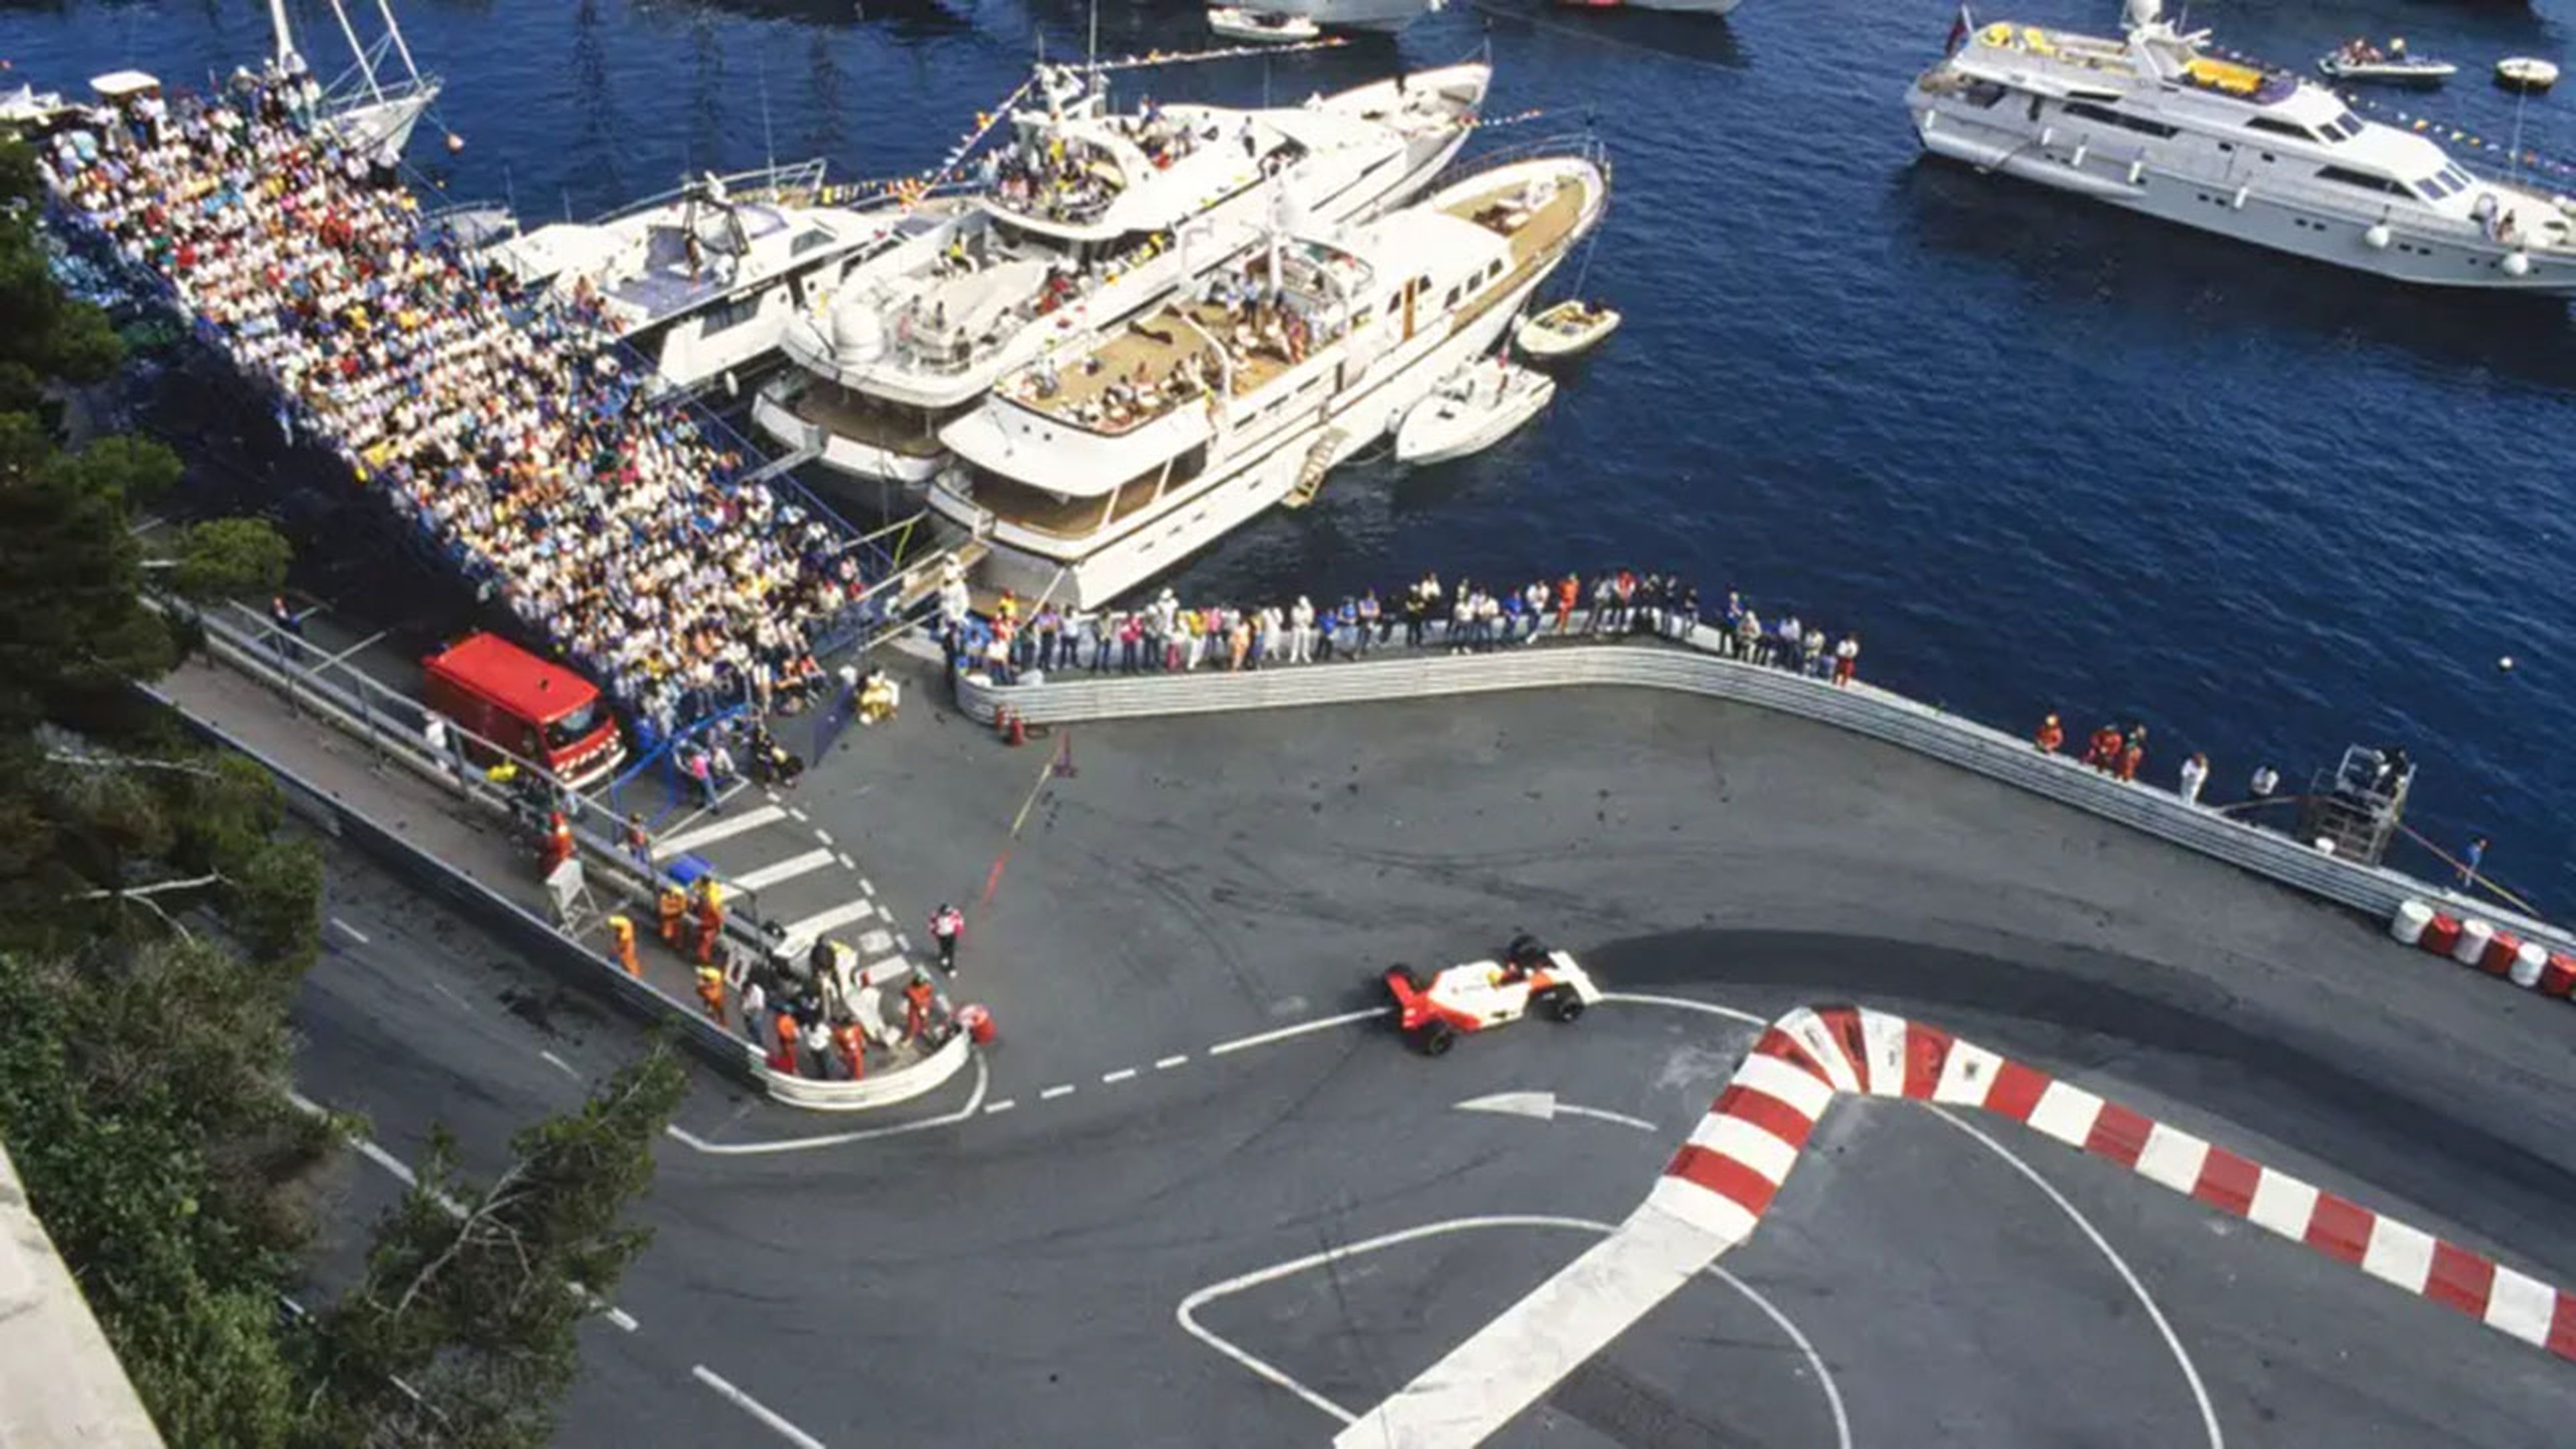 Senna, en el GP de Mónaco de 1988. (Fotografía: Motorsport Images/LAT)